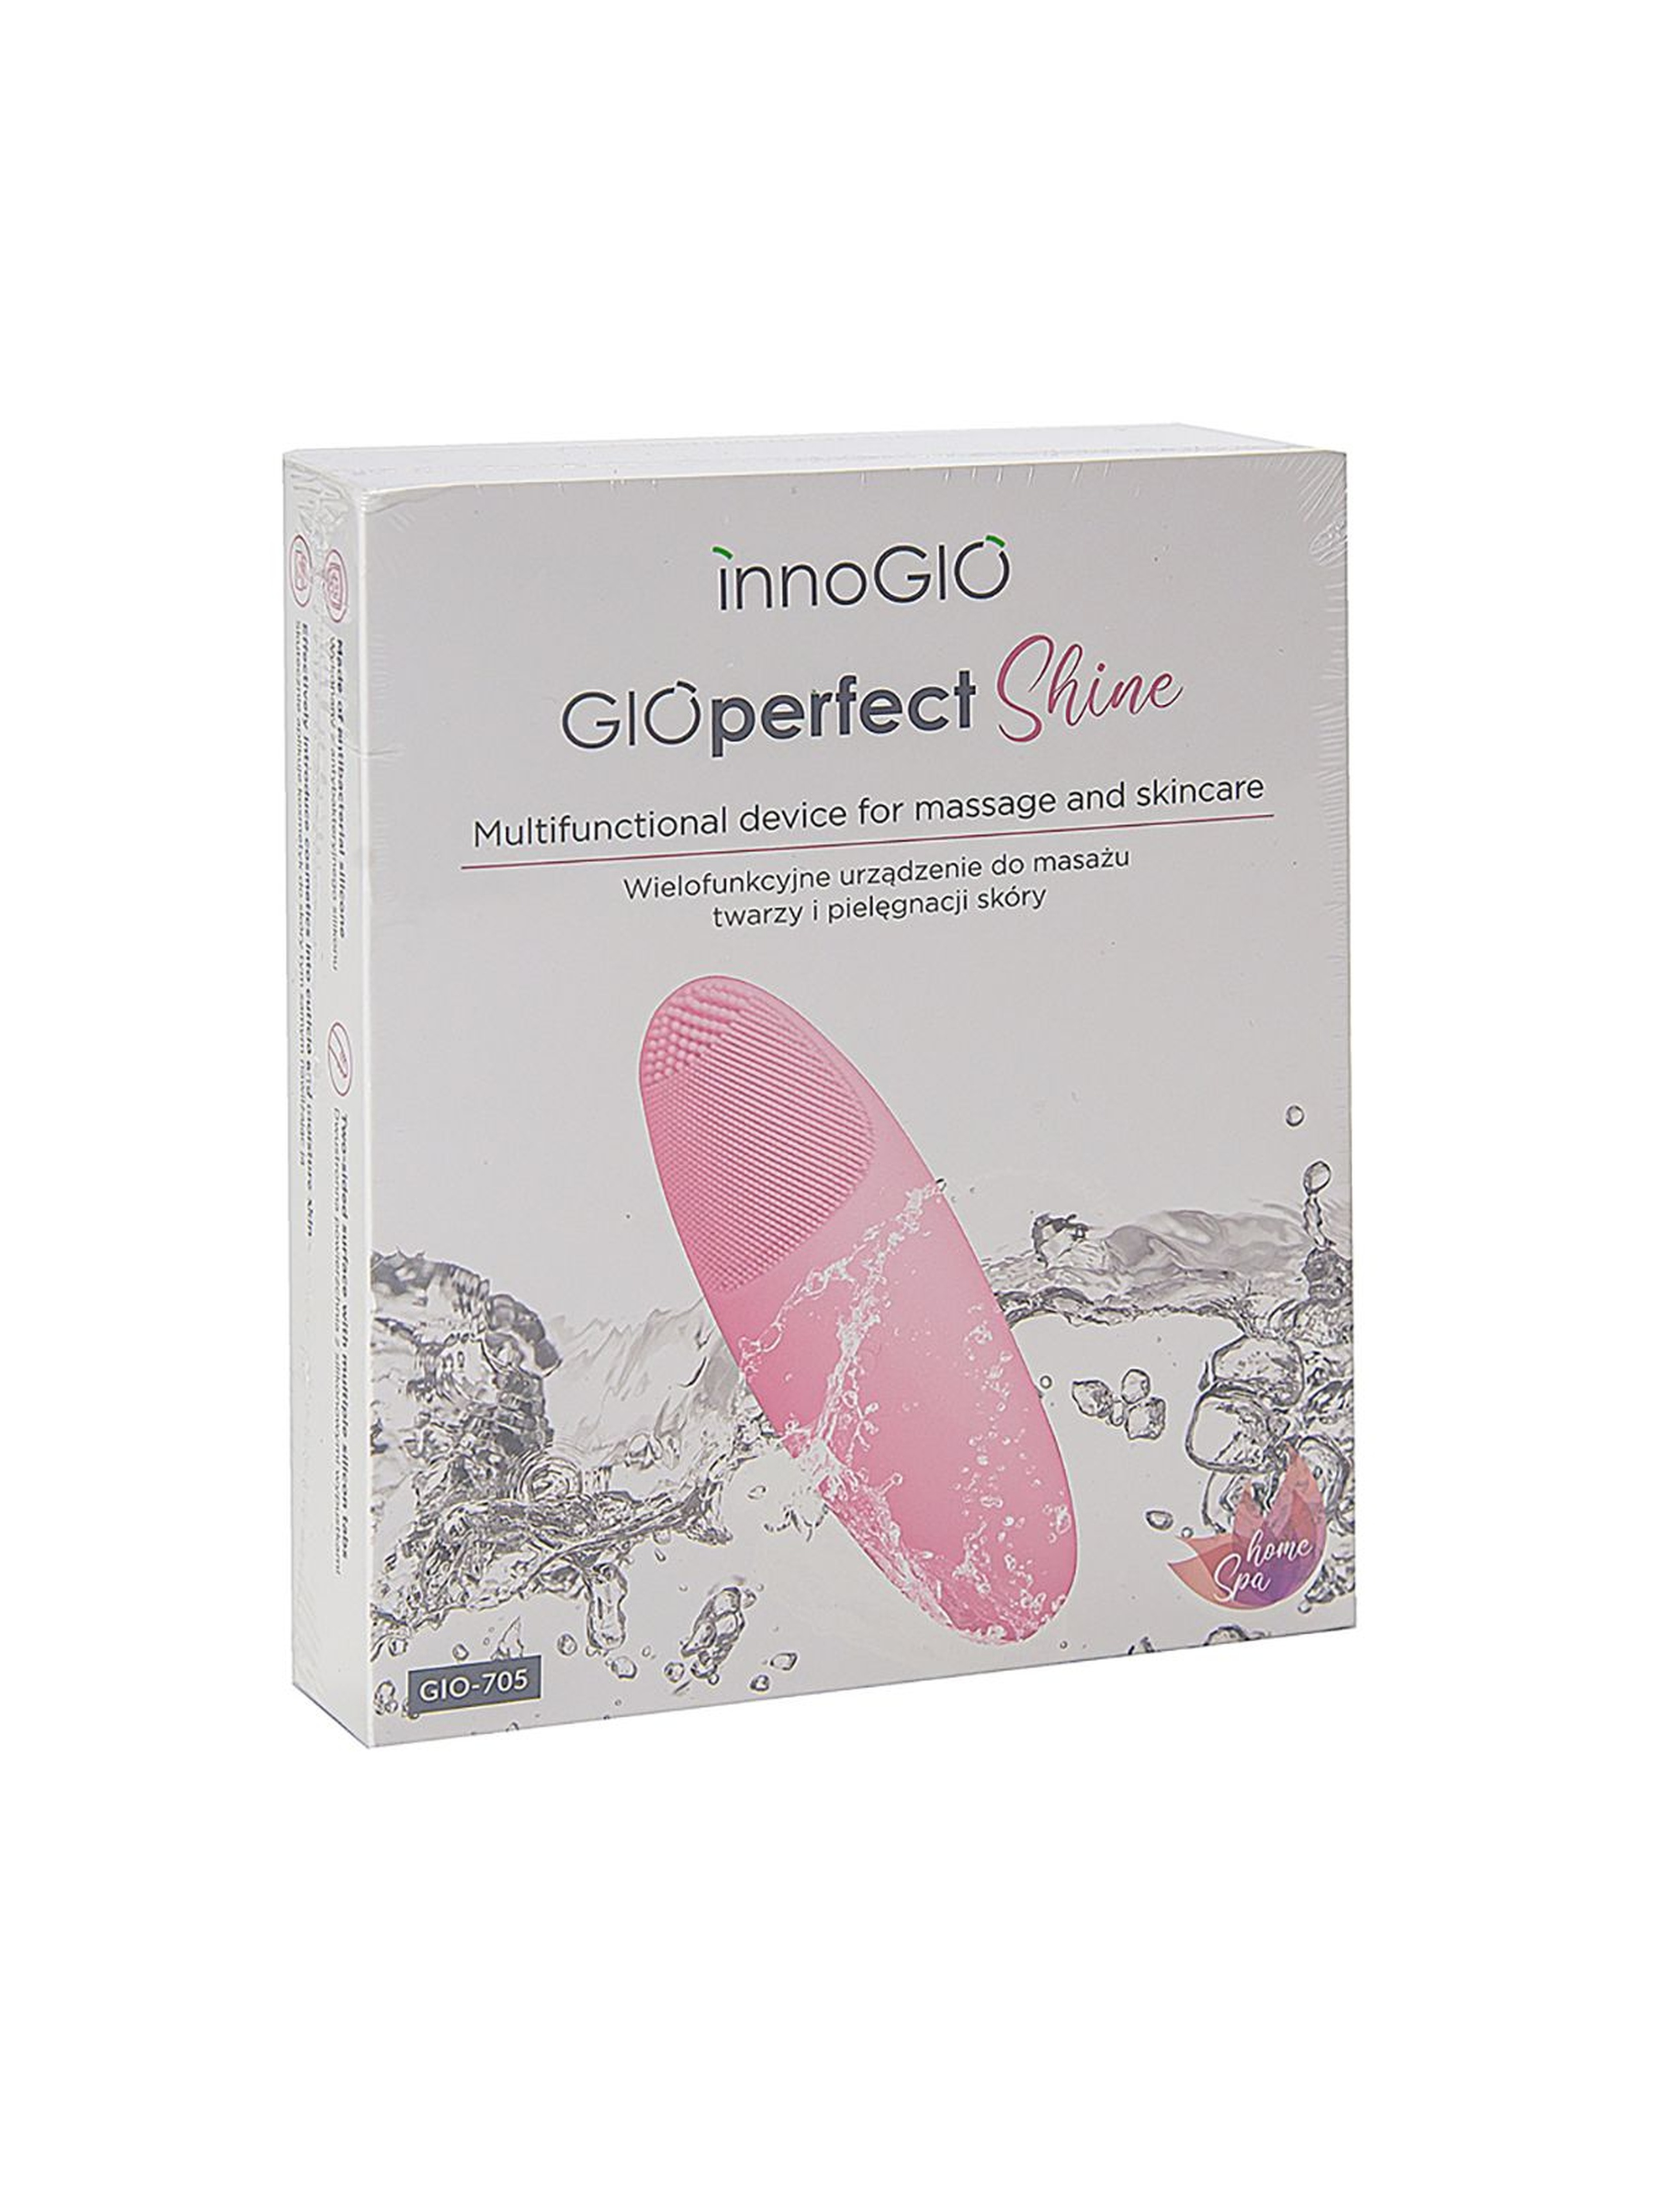 InnoGIO Wielofunkcyjne urządzenie do masażu twarzy i pielęgnacji skóry GIOPERFECT SHINE GIO-705